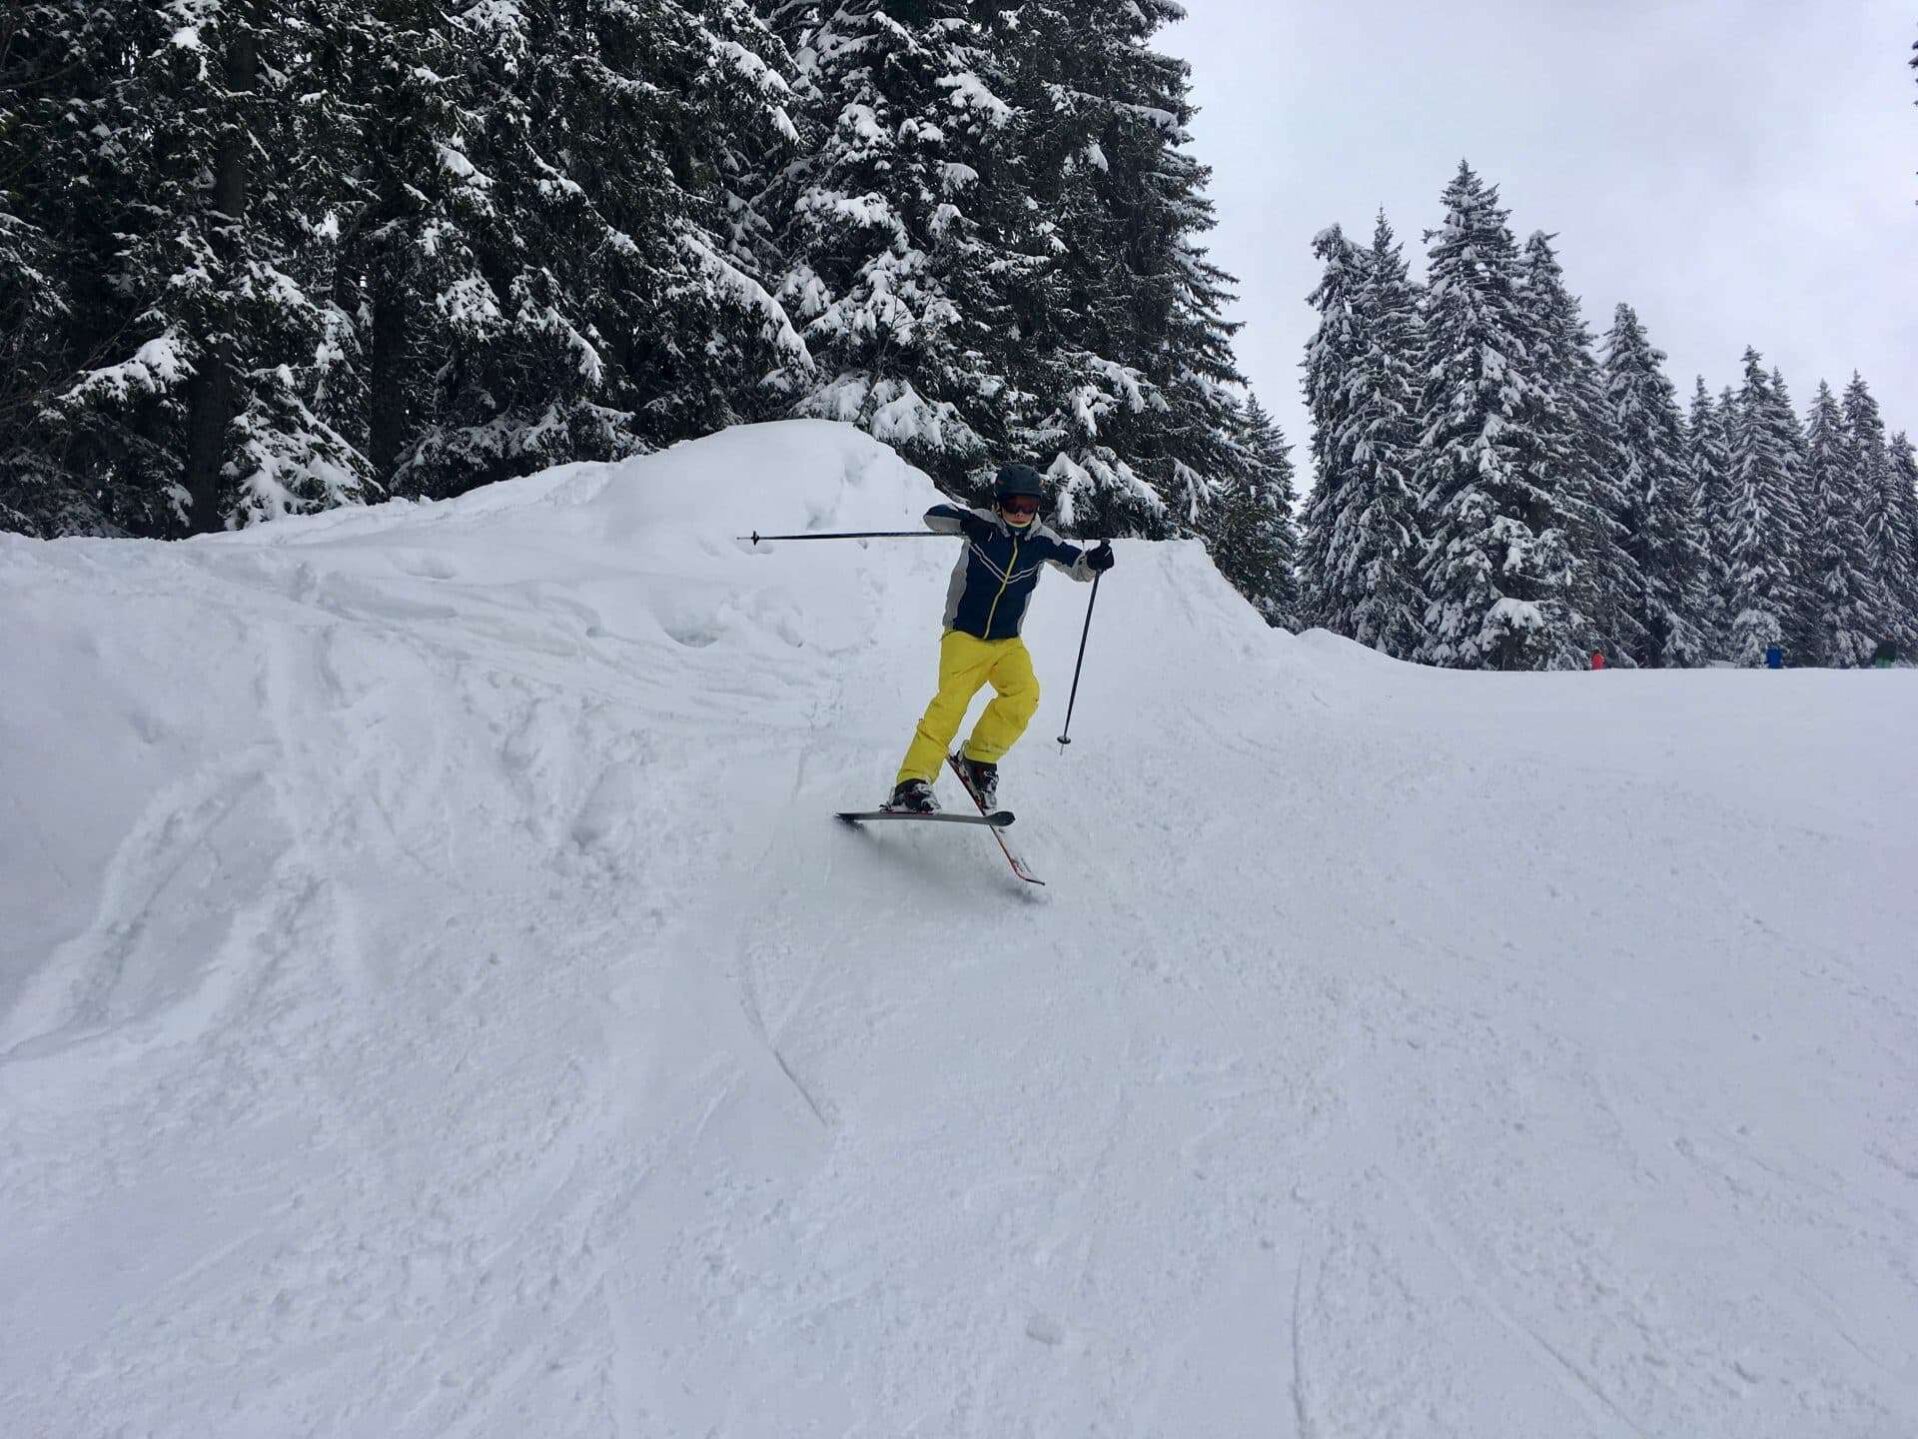 Een skiër in een geel en blauw skipak maakt een bocht op een besneeuwde helling in het skigebied Portes du Soleil, omgeven door dichtbeboste, met sneeuw bedekte dennenbomen. In de verte zijn andere skiërs zichtbaar tussen de bomen.